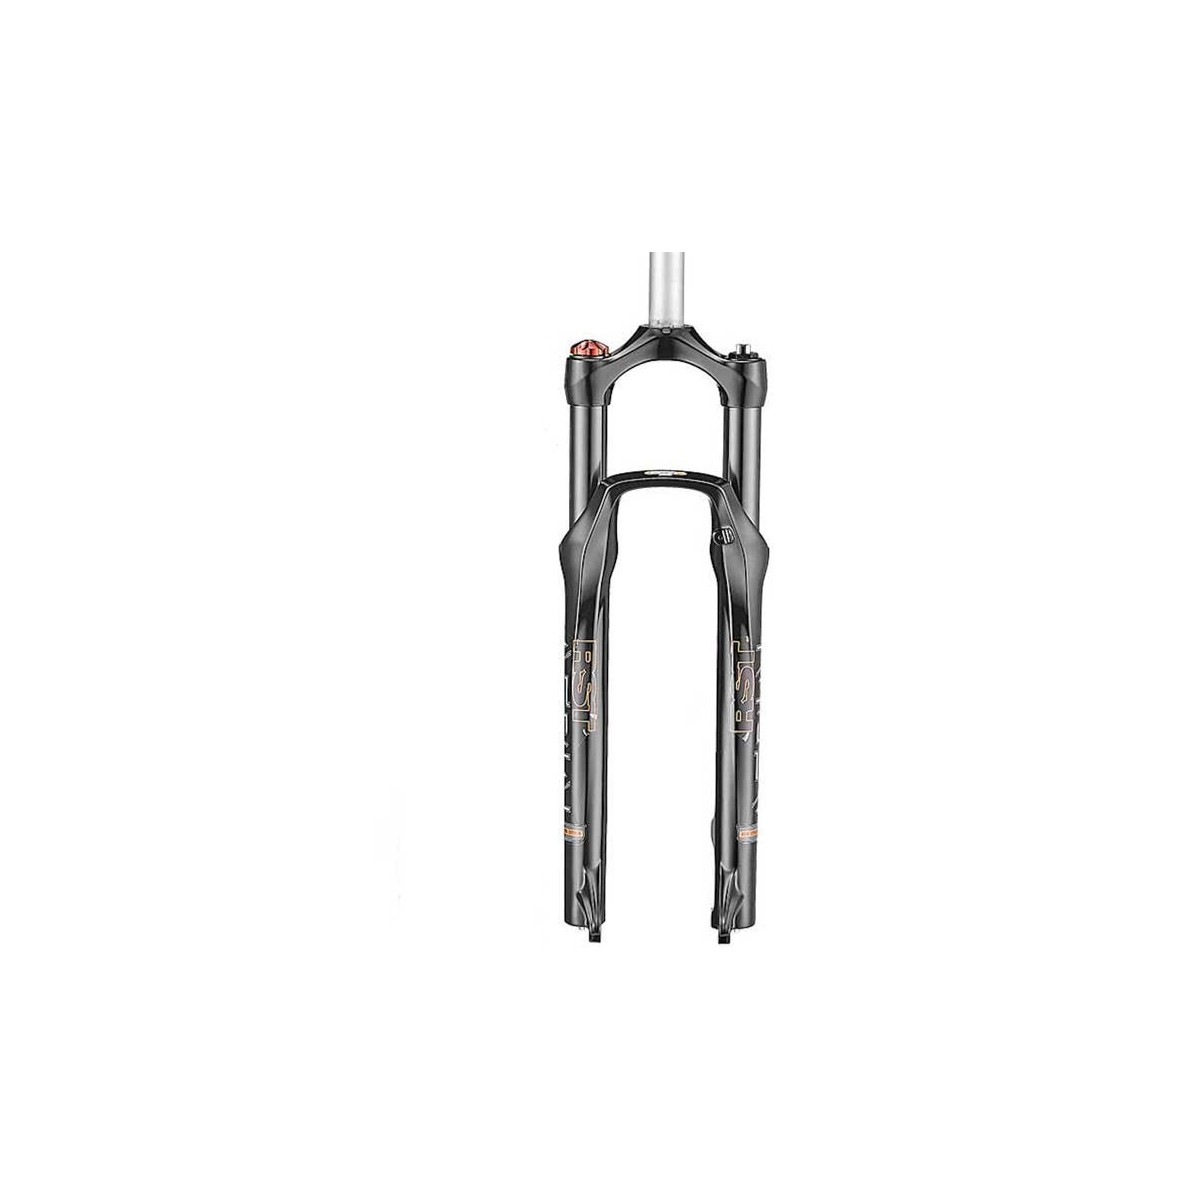 RST Aerial 27.5 RL suspension forks